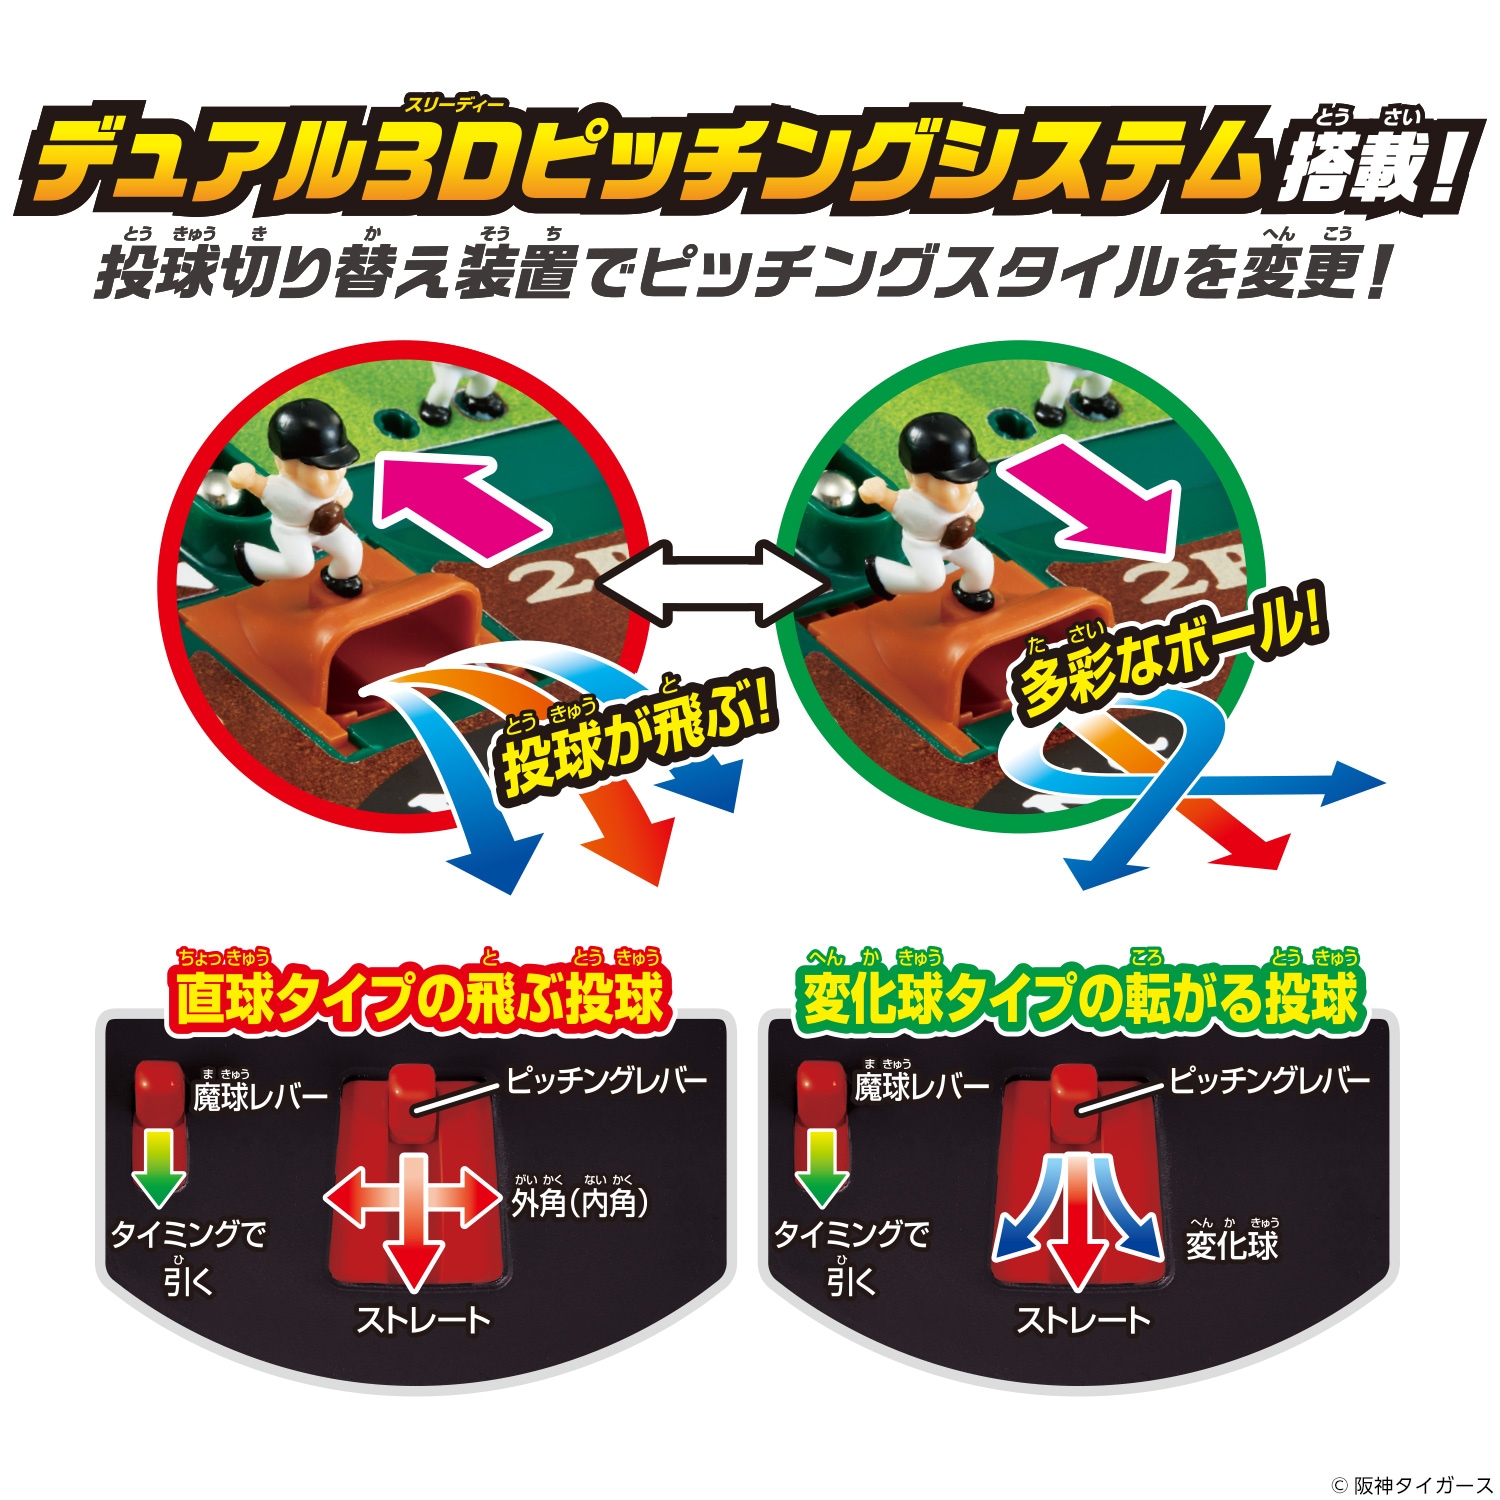 野球盤3dエース スタンダード 阪神タイガース 商品カタログ エポック社の野球盤 エポック社